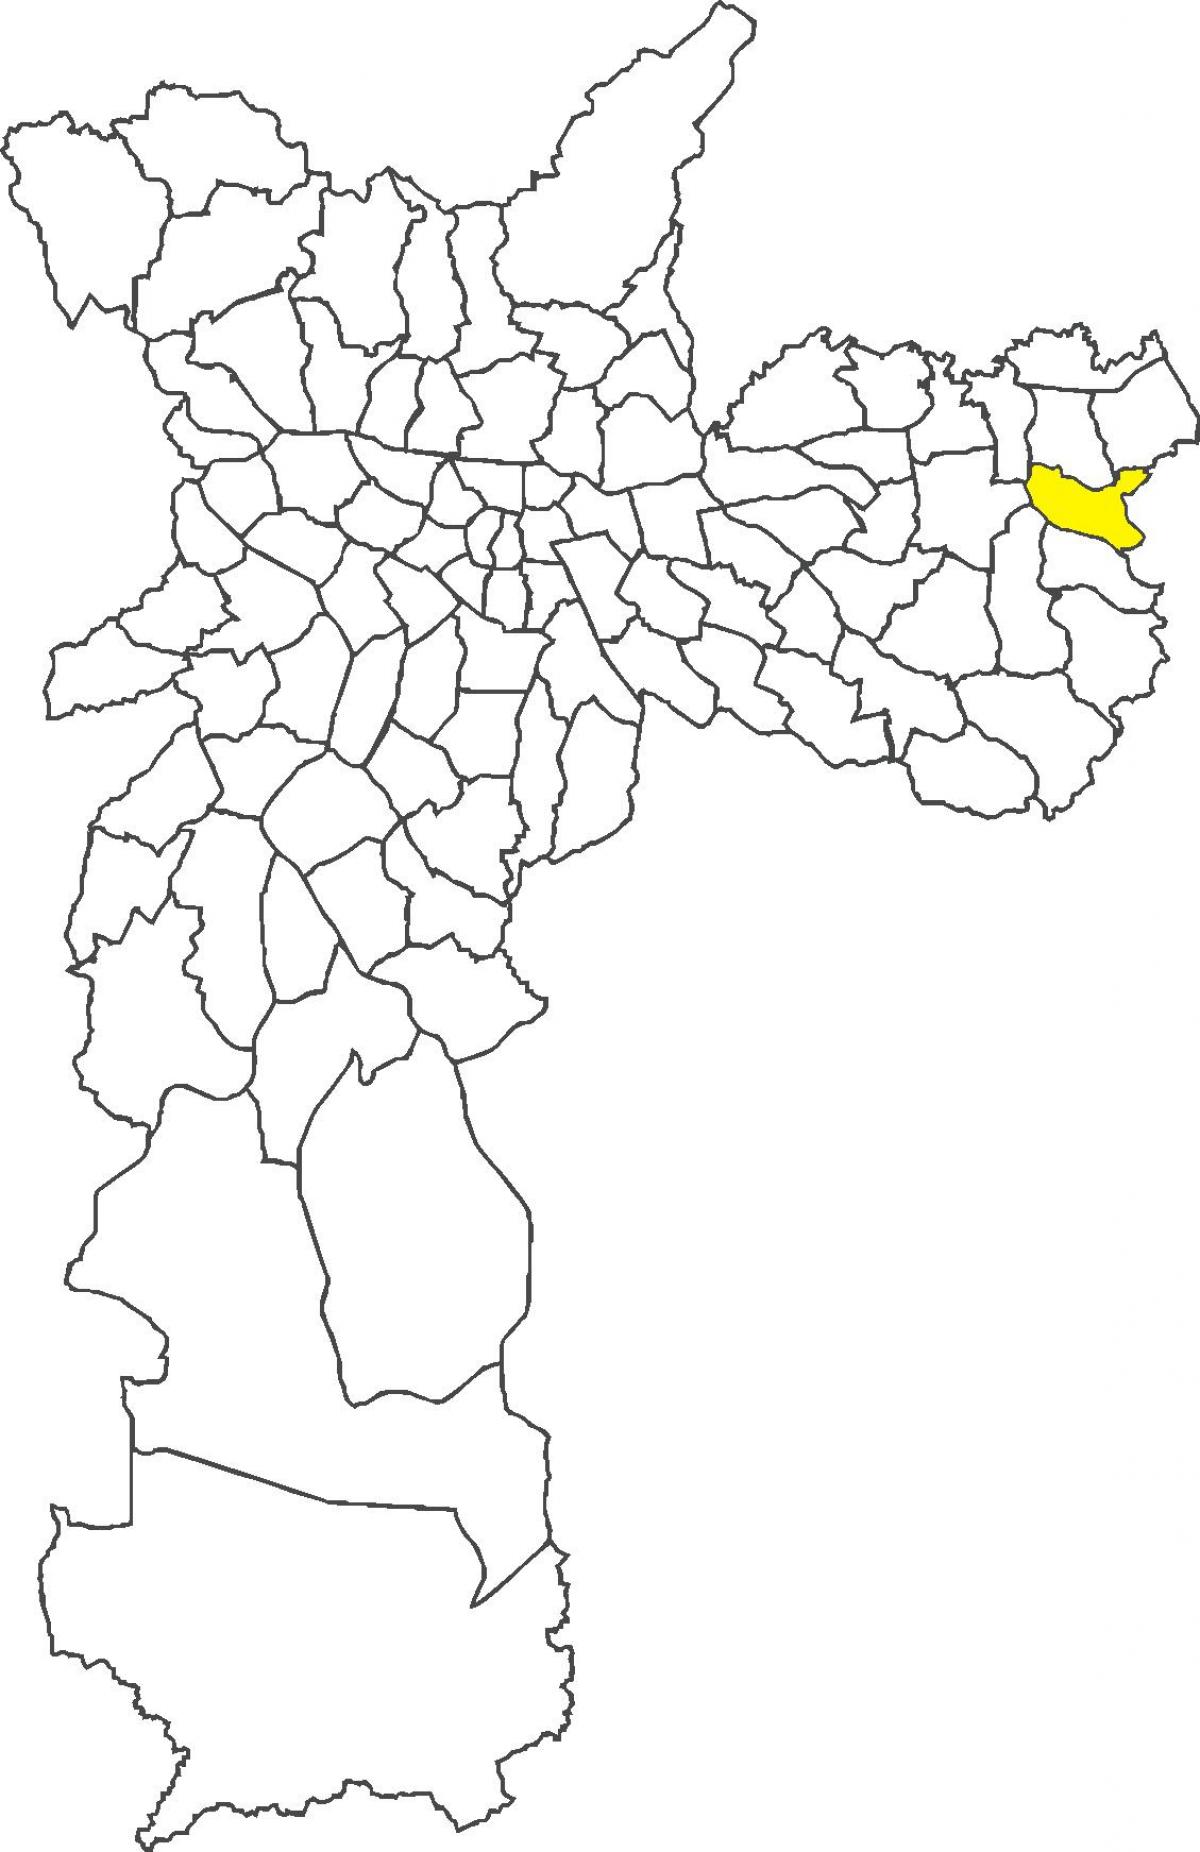 মানচিত্র Lajeado জেলা